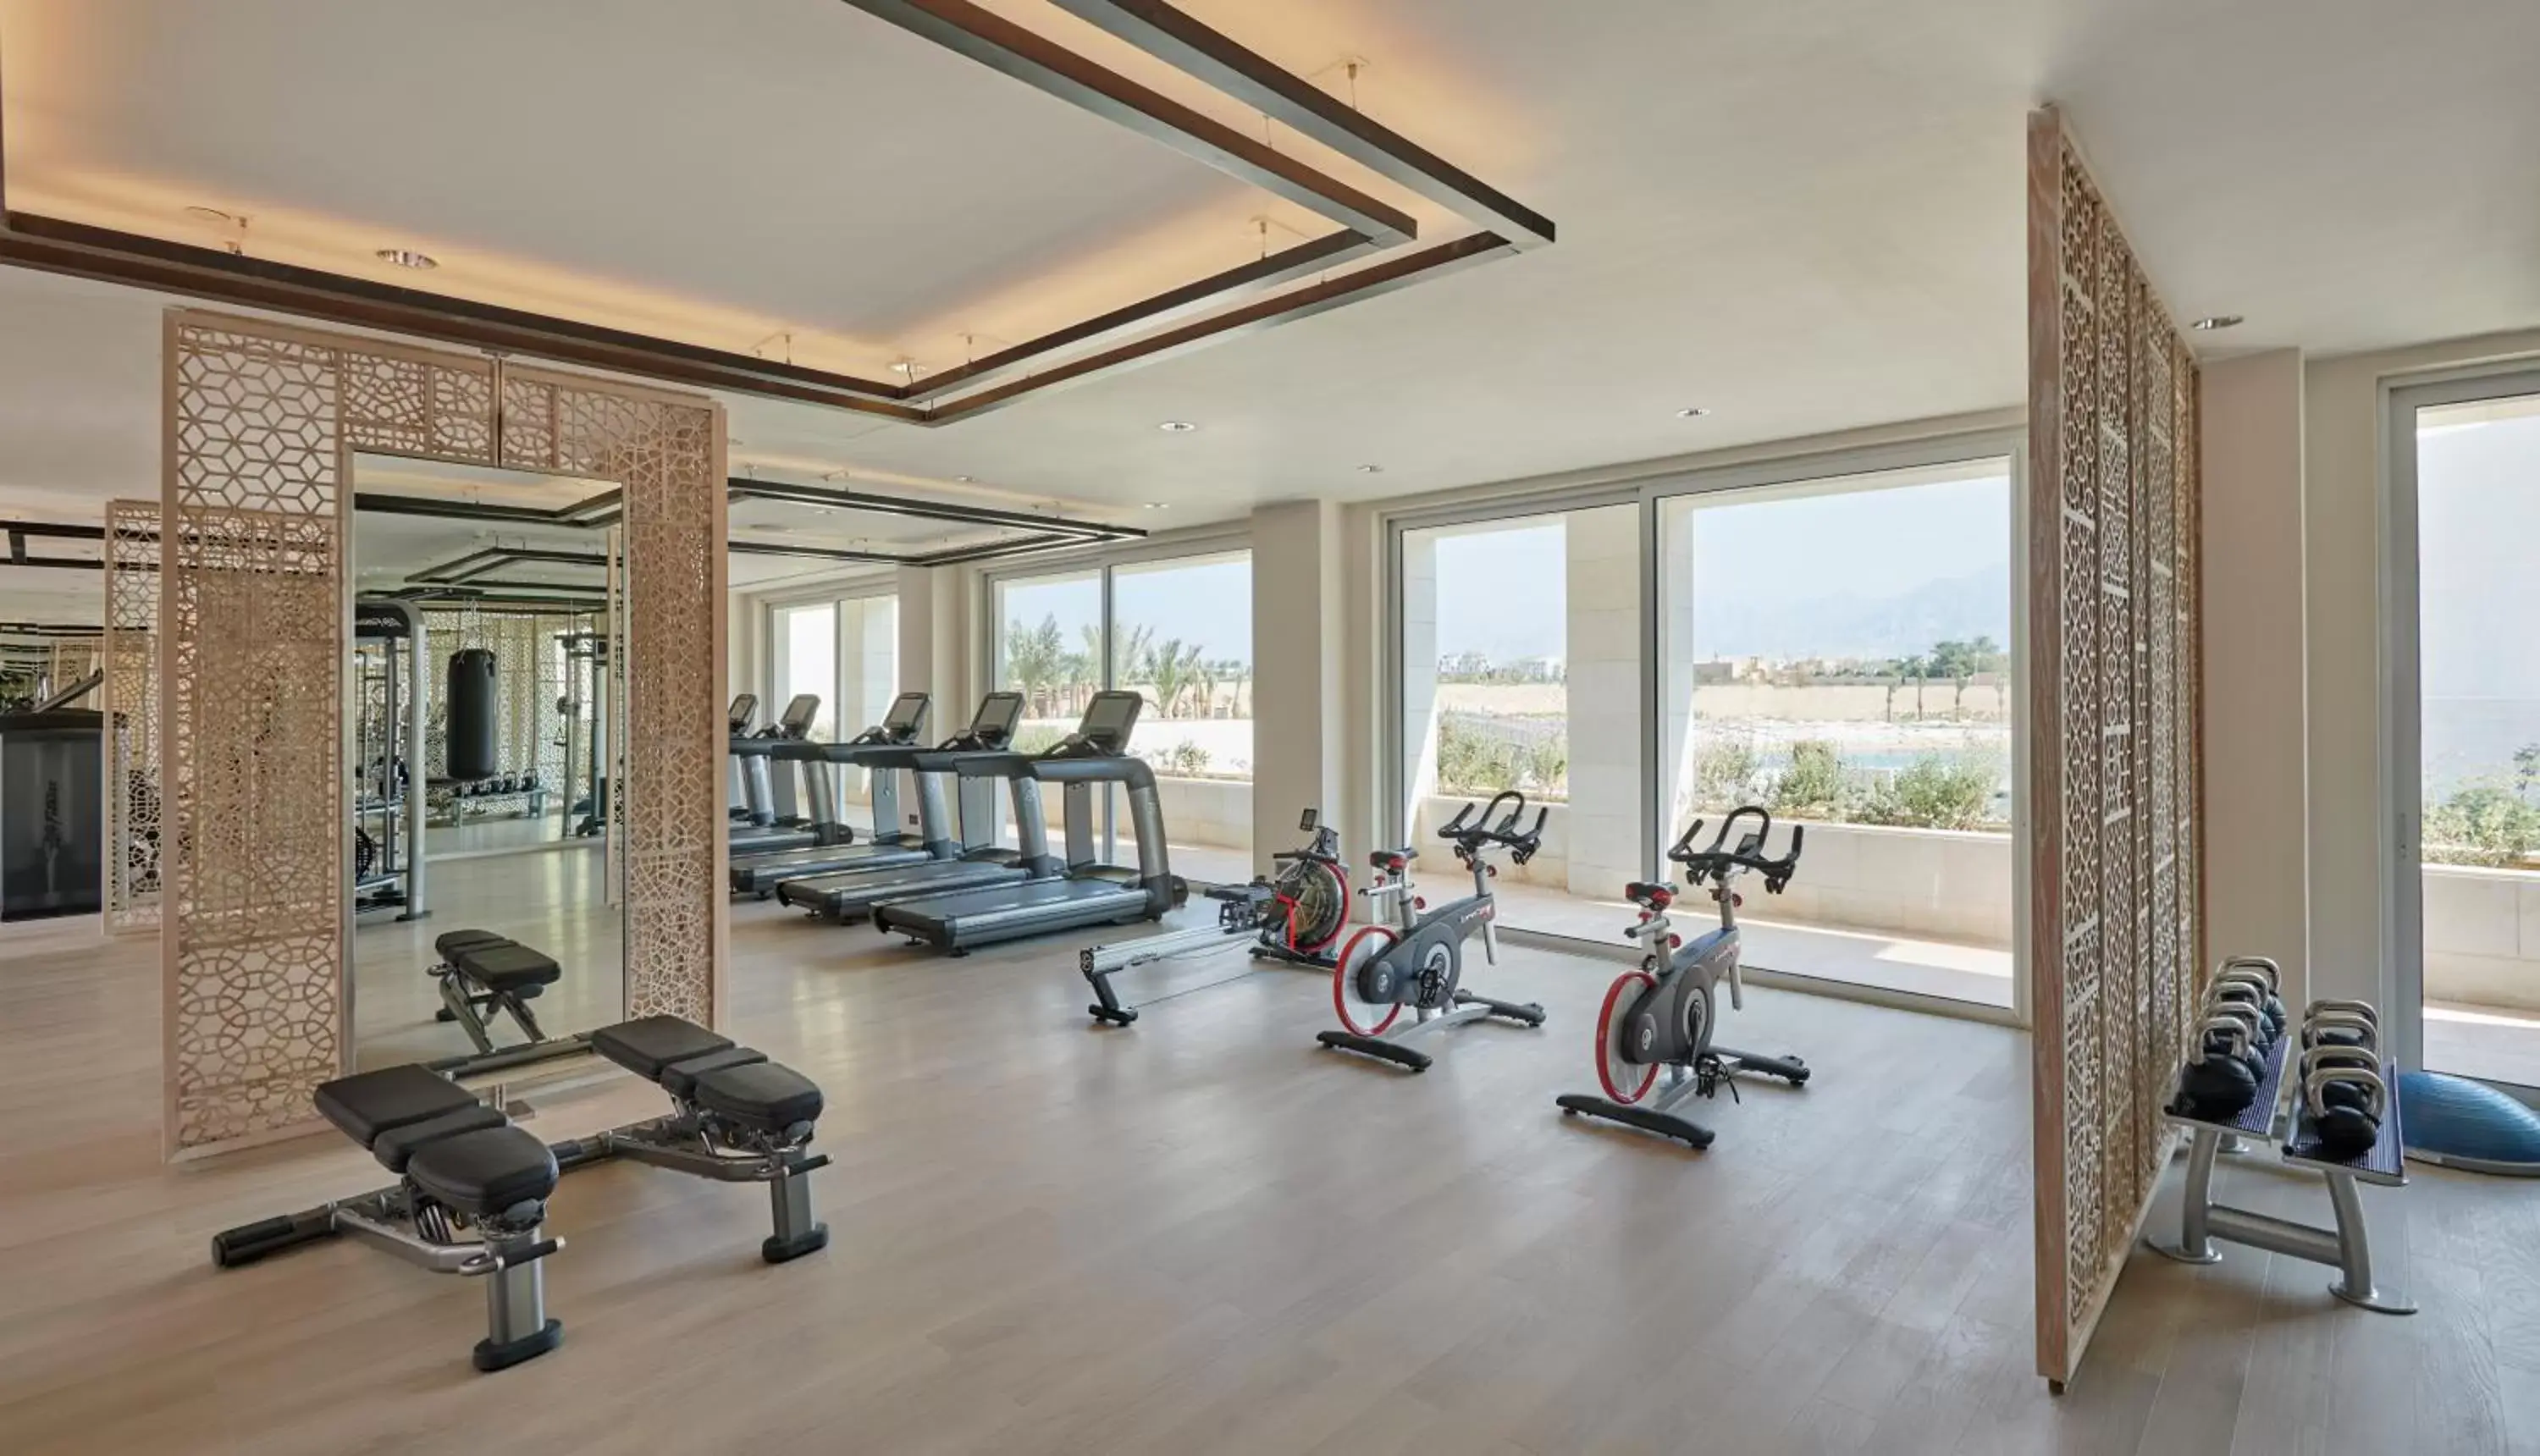 Fitness centre/facilities, Fitness Center/Facilities in Hyatt Regency Aqaba Ayla Resort